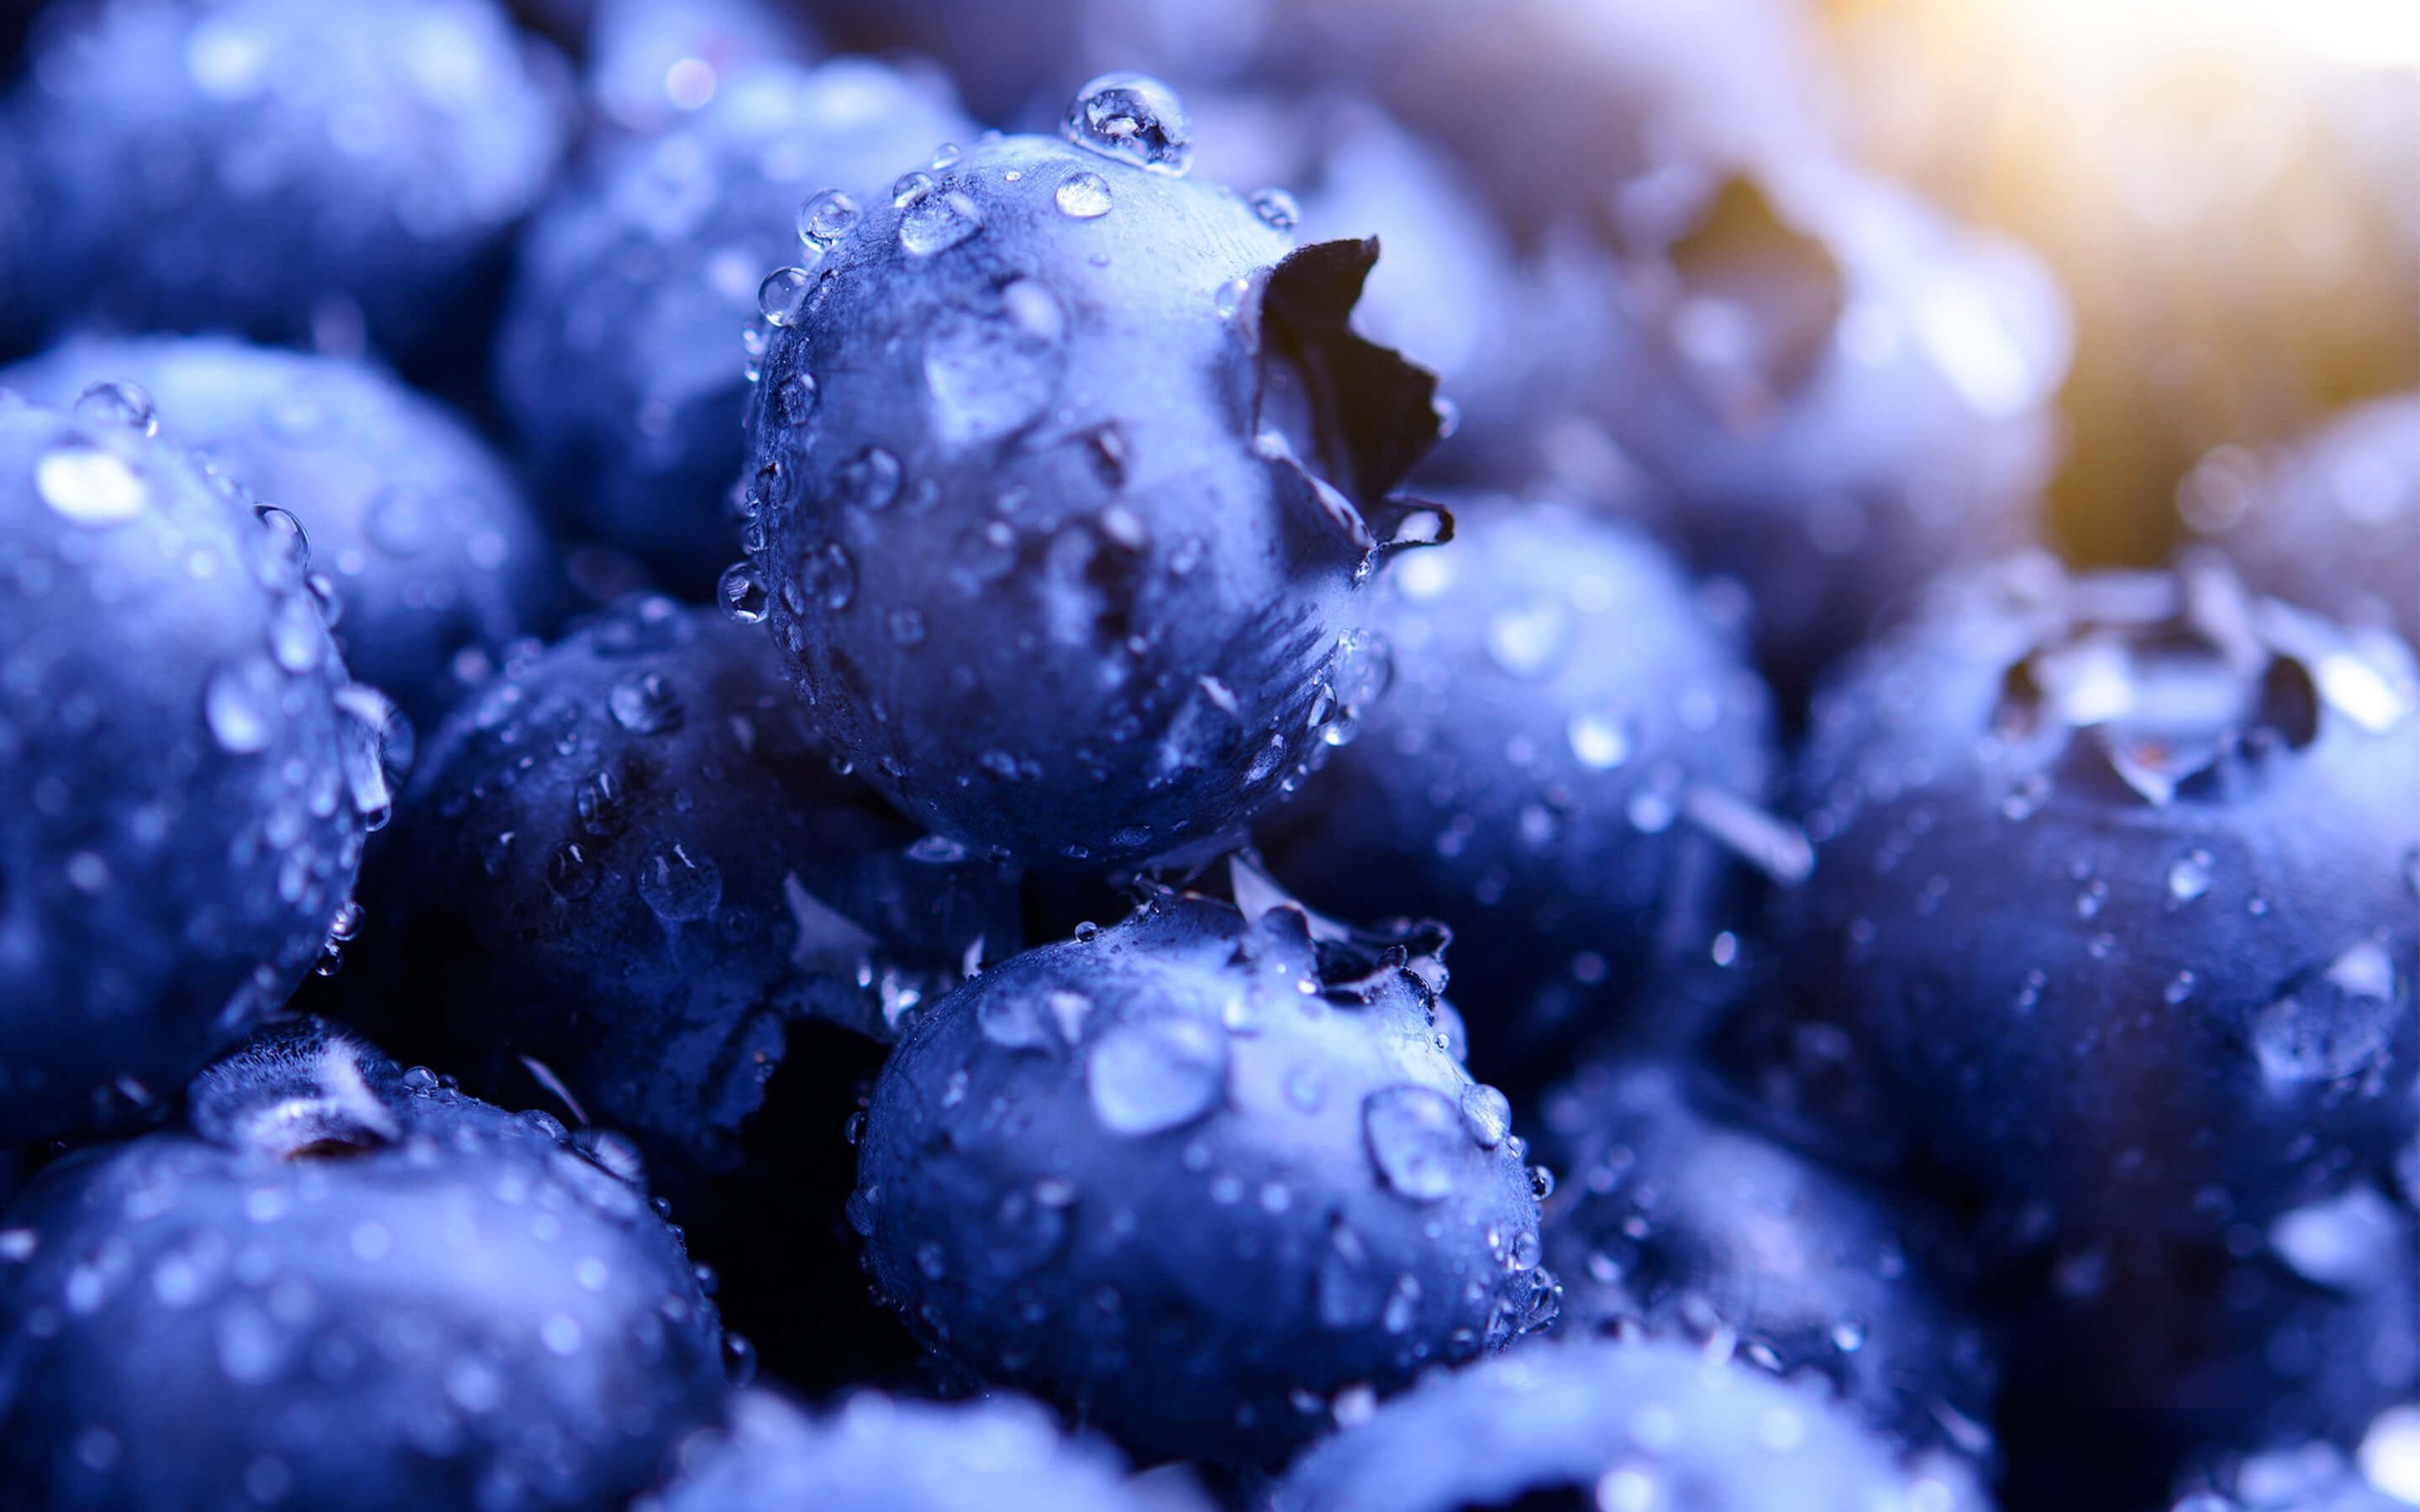 Blueberry-themed desktop, Vibrant wallpaper, Fresh blueberries, Nature-inspired design, 2880x1800 HD Desktop